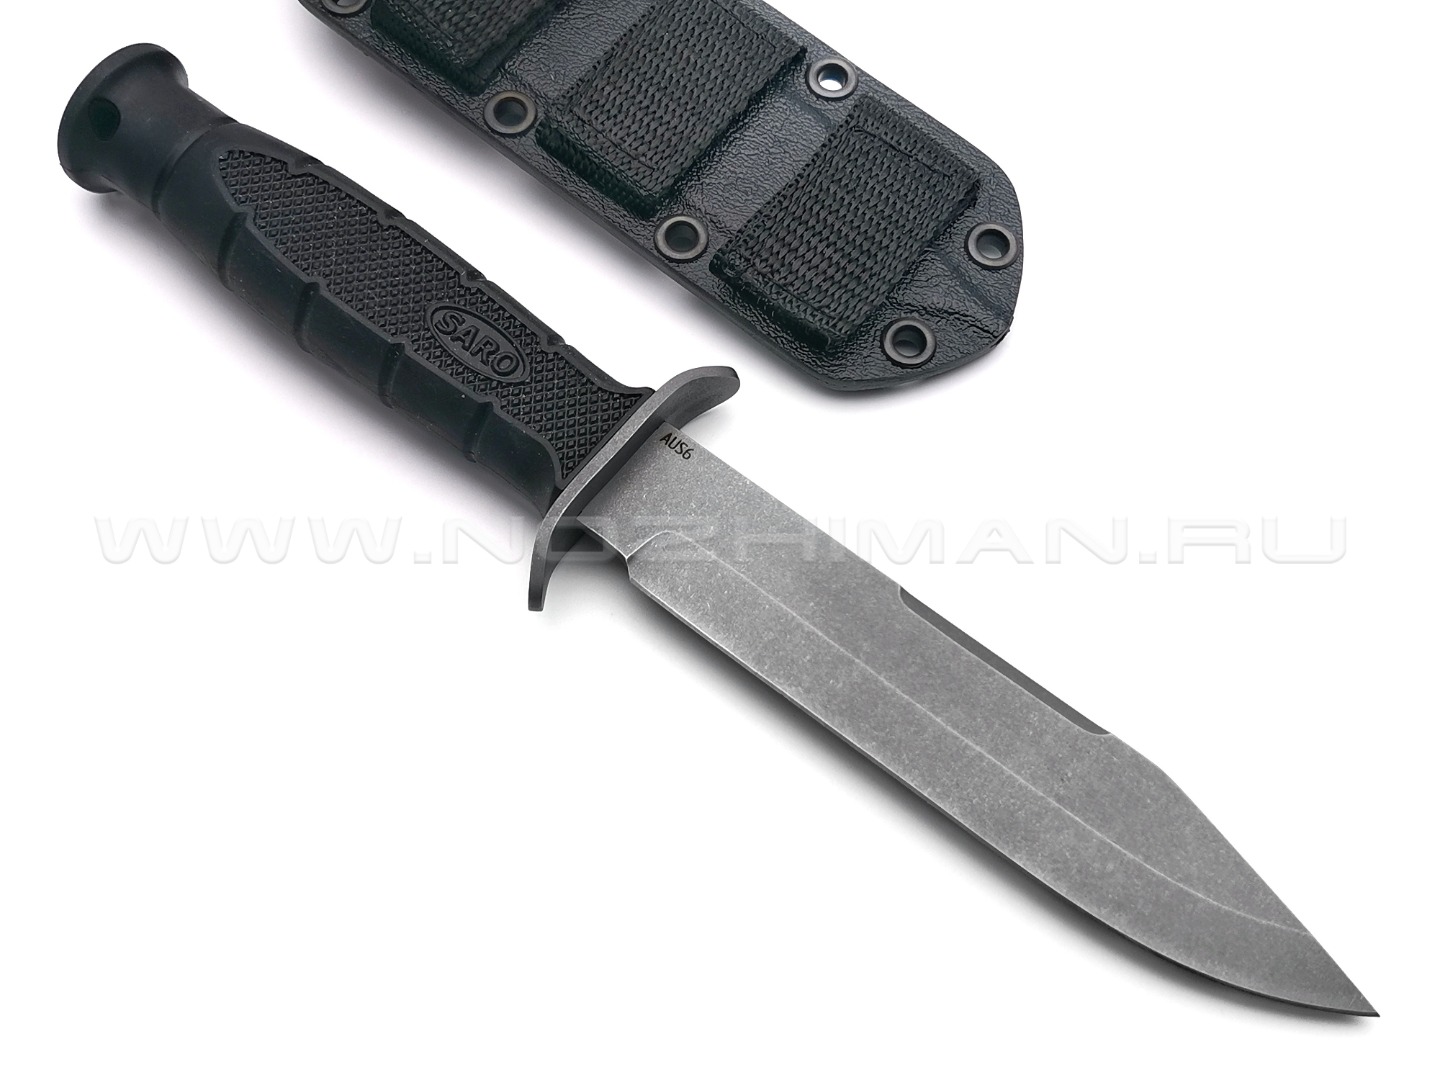 Saro нож НР-2000 сталь Aus-6, рукоять резина